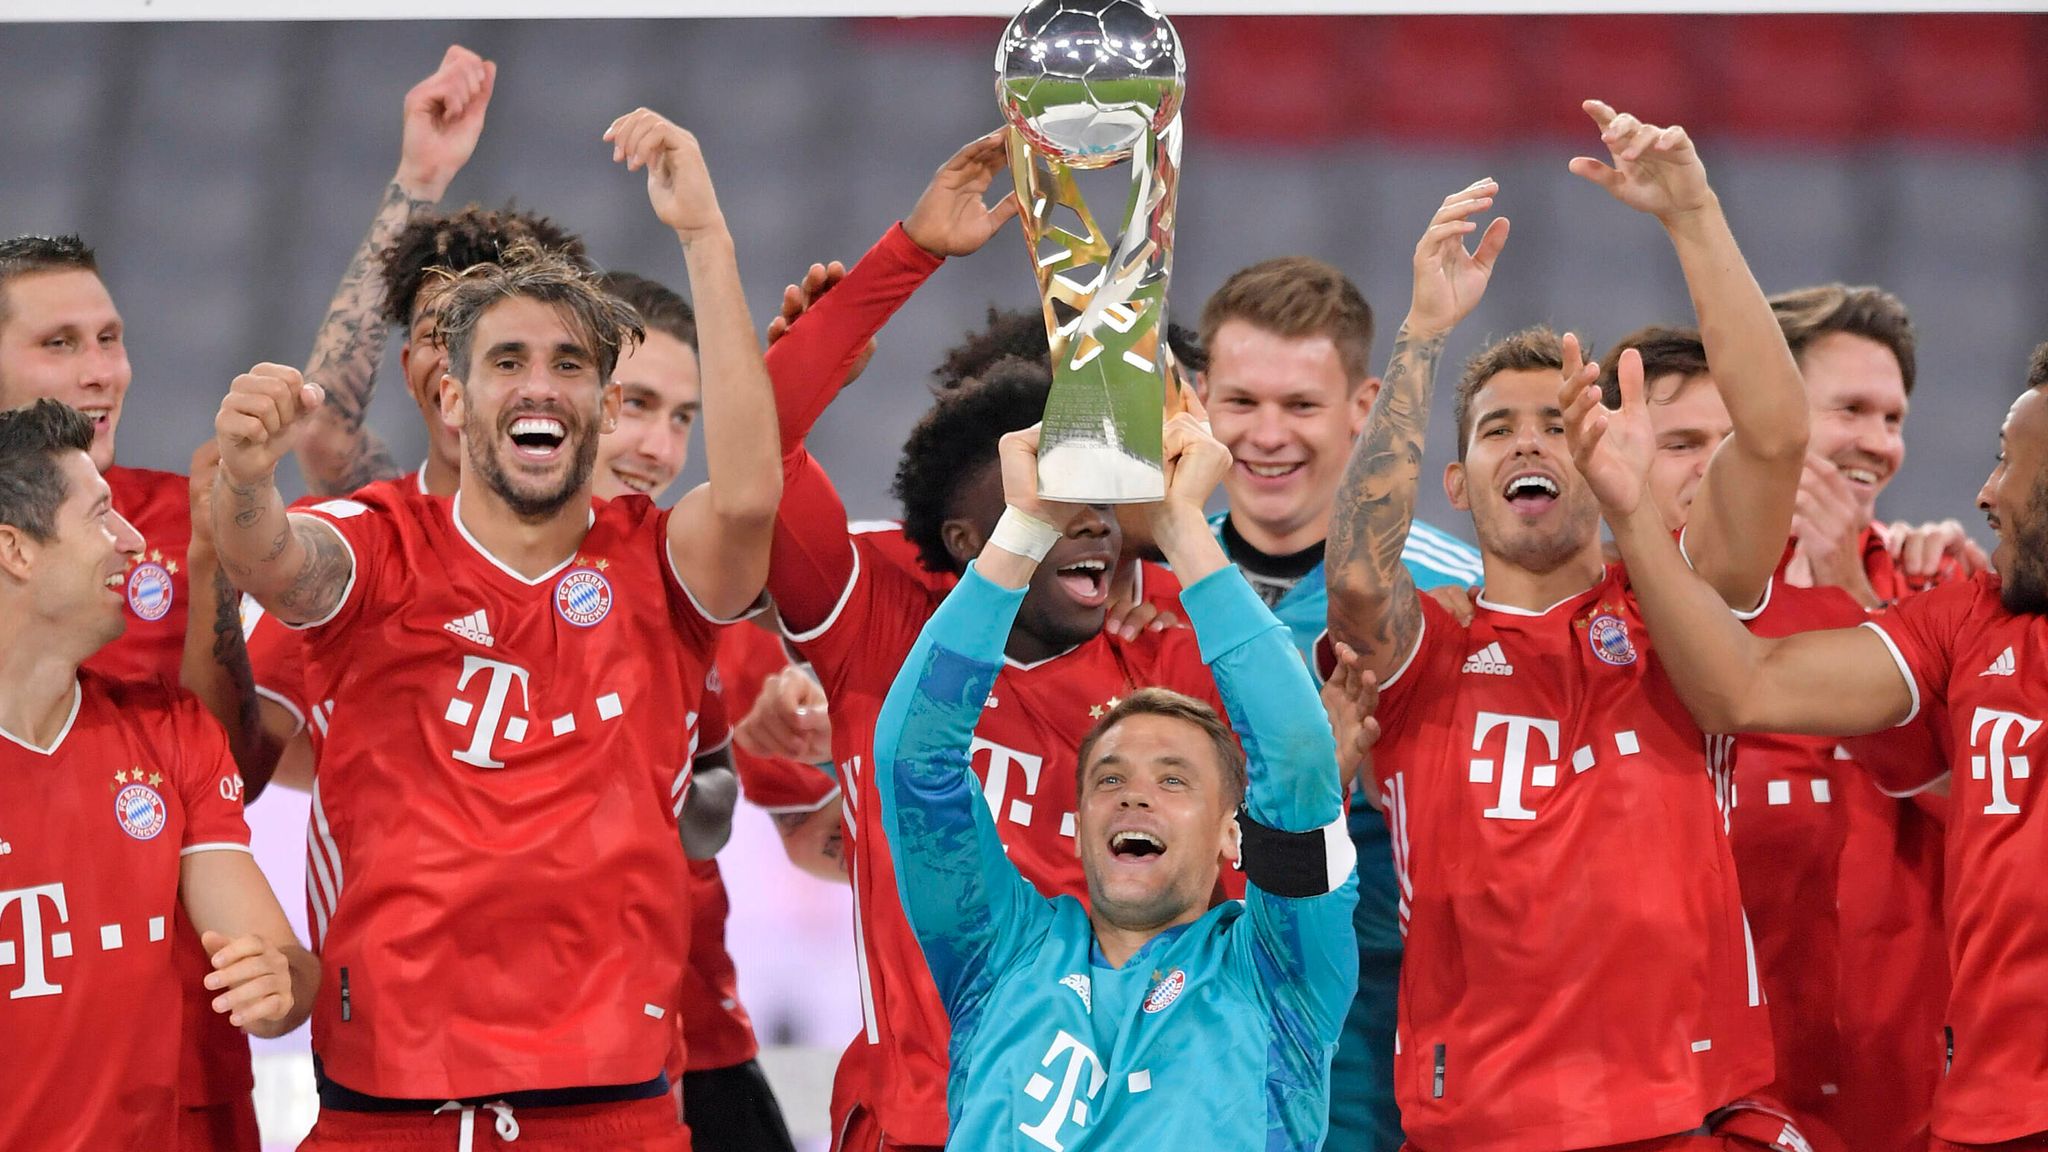 Fussball: Das Titel-Jahr des FC Bayern München | Fußball News | Sky Sport